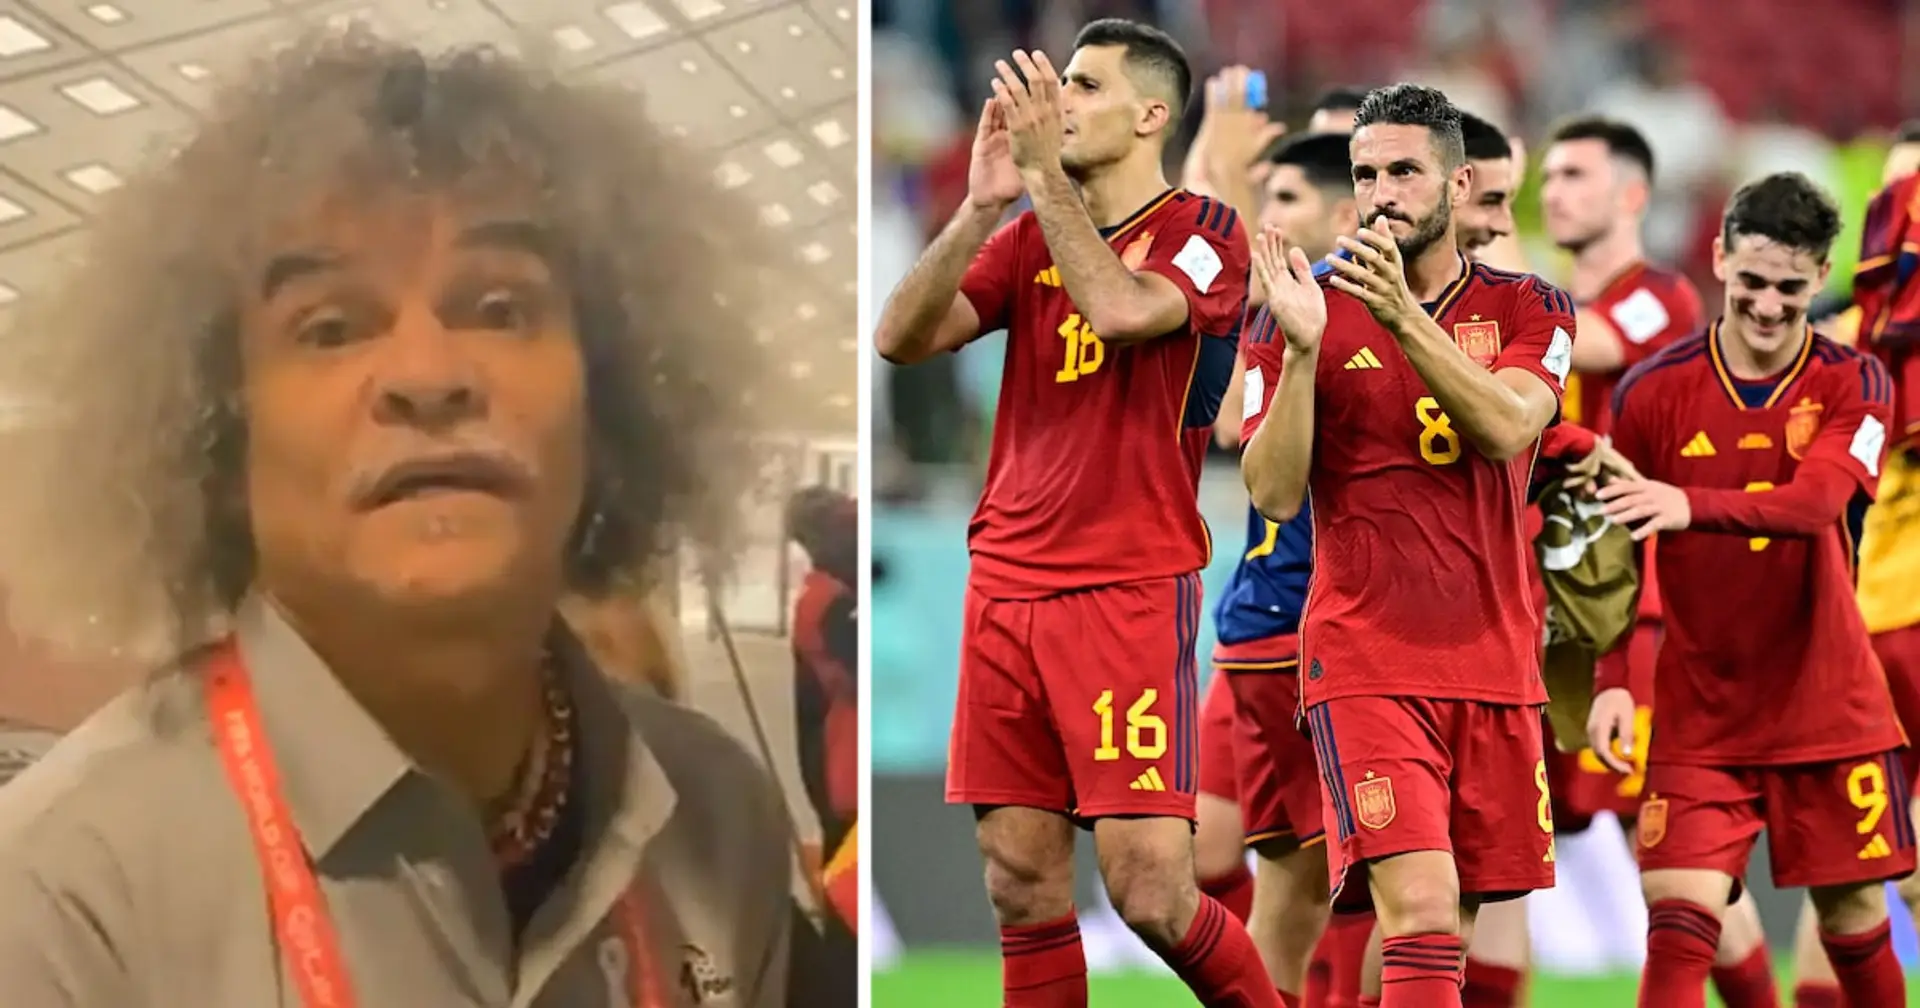 "Je veux qu'il m'apprenne le football" : Valderrama émerveillée par un joueur du Barca après le match vs Costa Rica